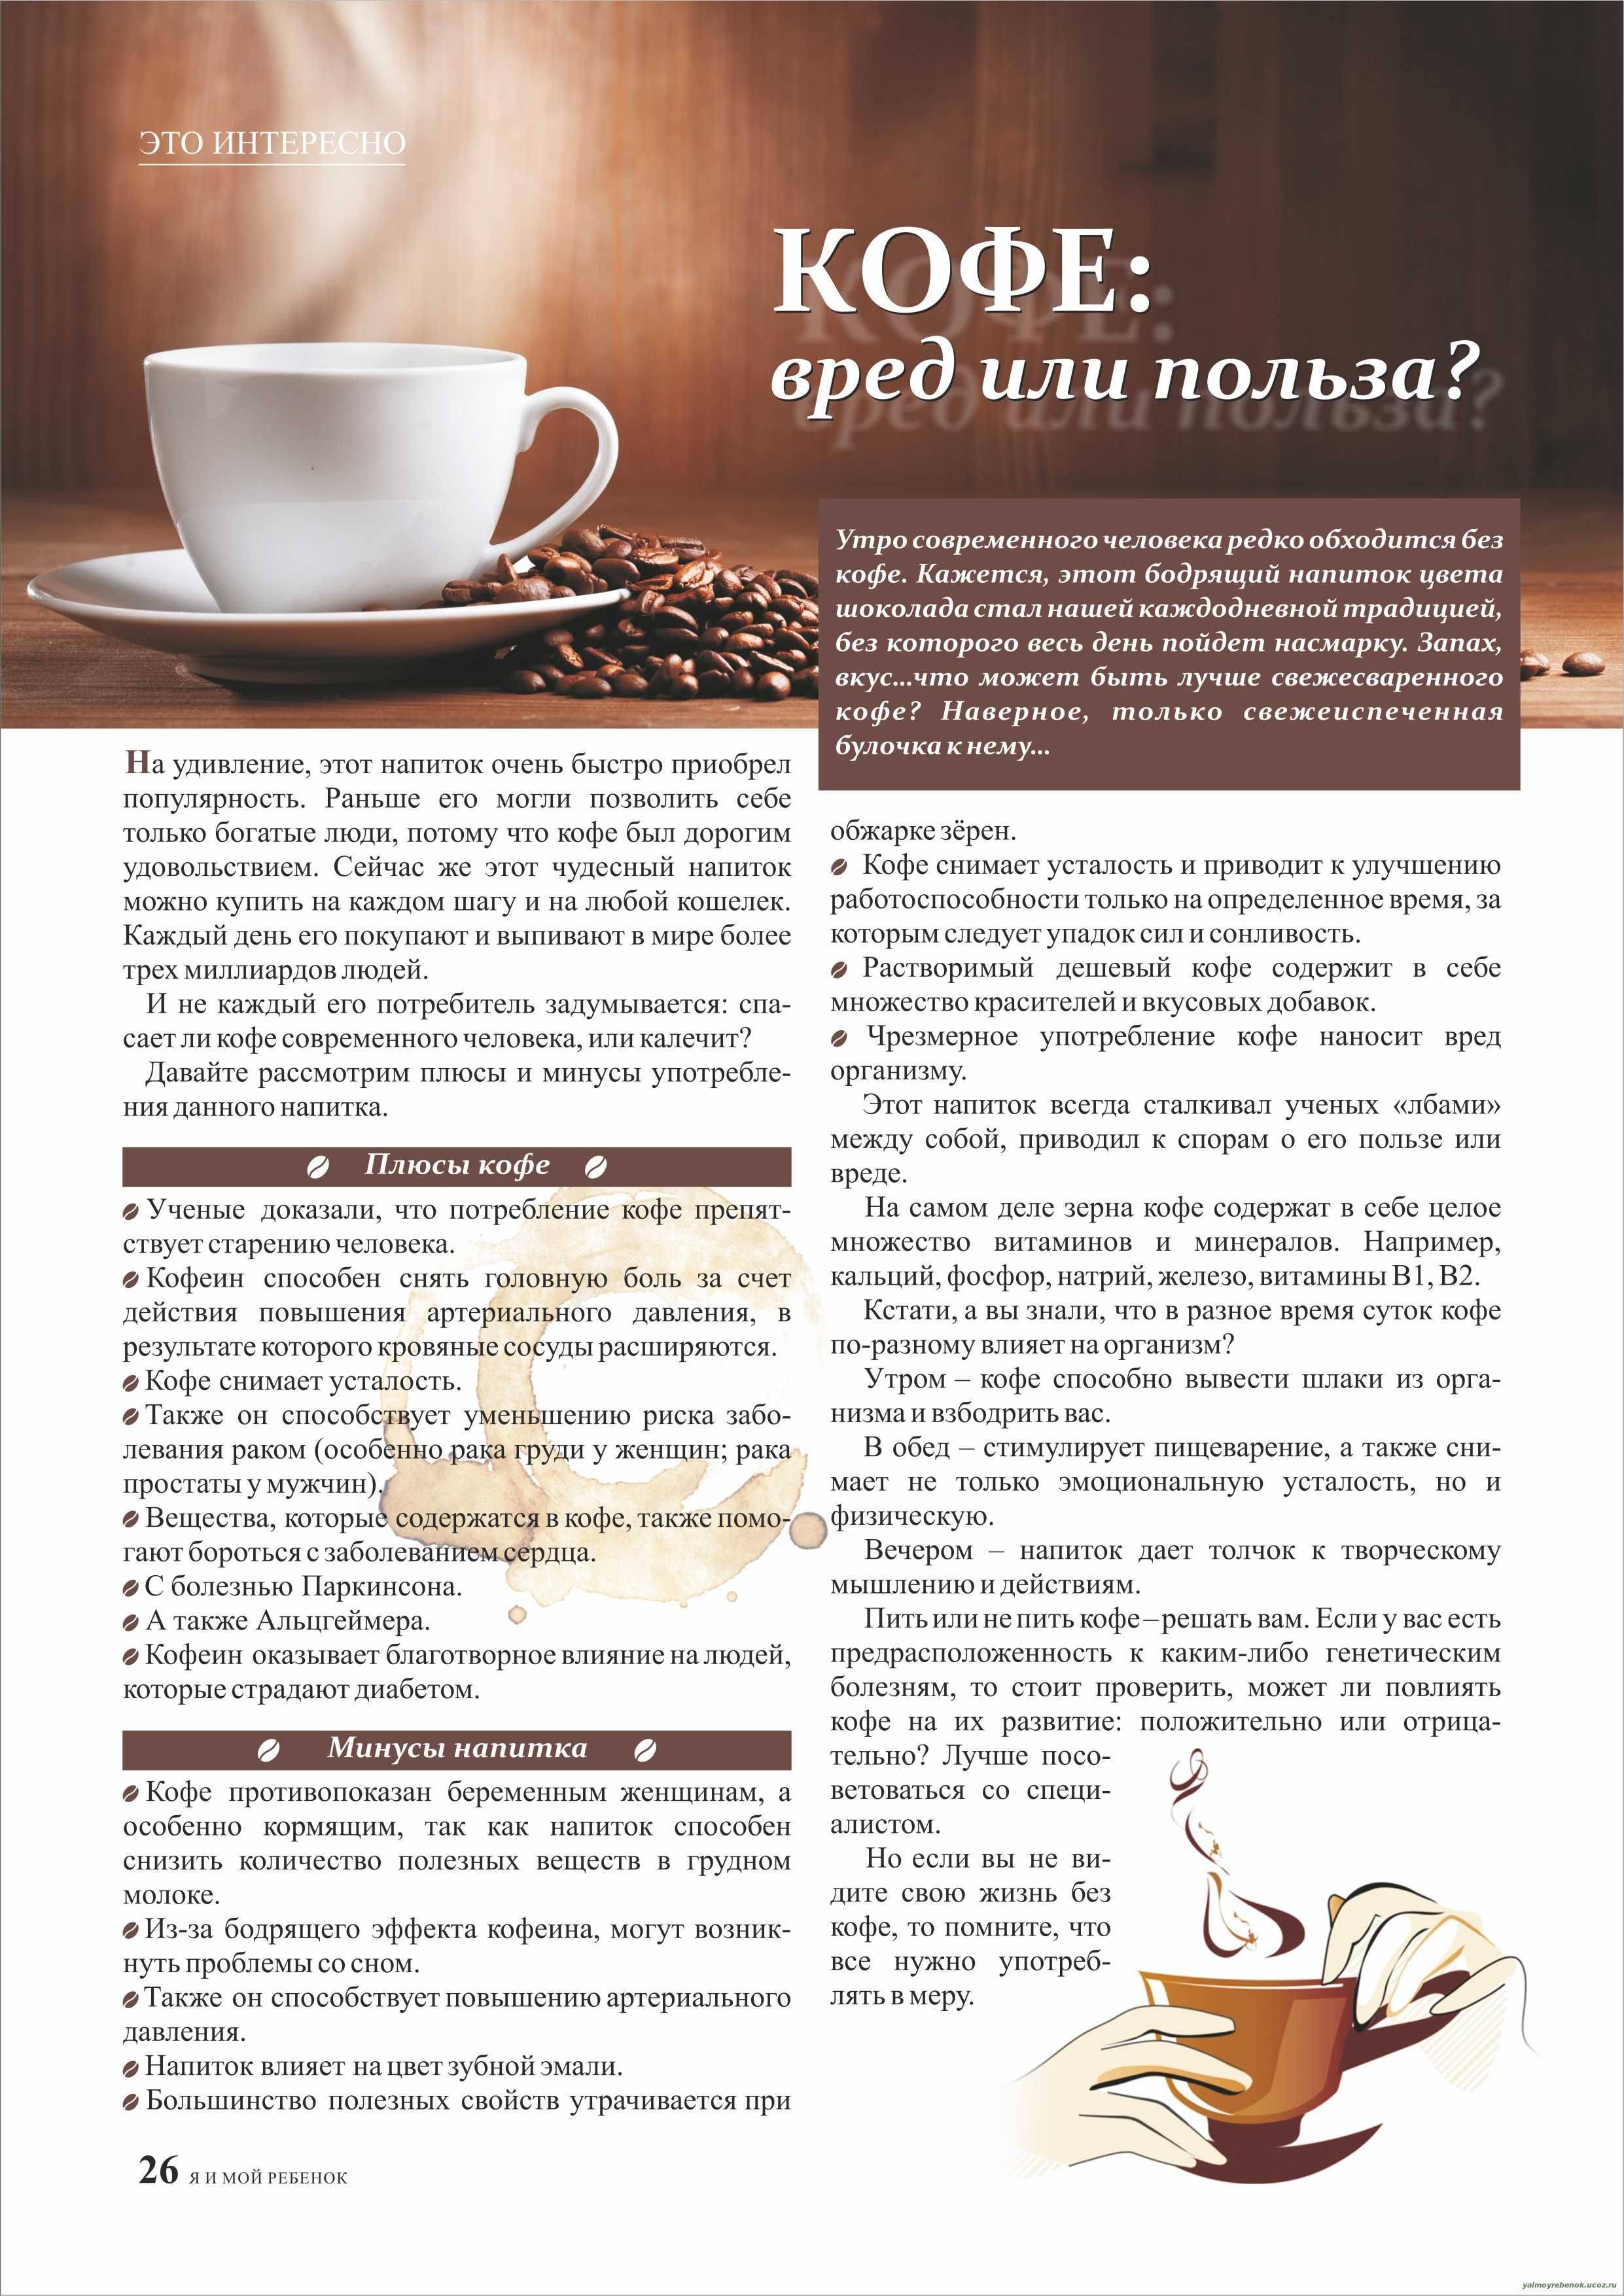 Кому нельзя пить кофе: противопоказания и 8 побочных эффектов от употребления большого количества напитка